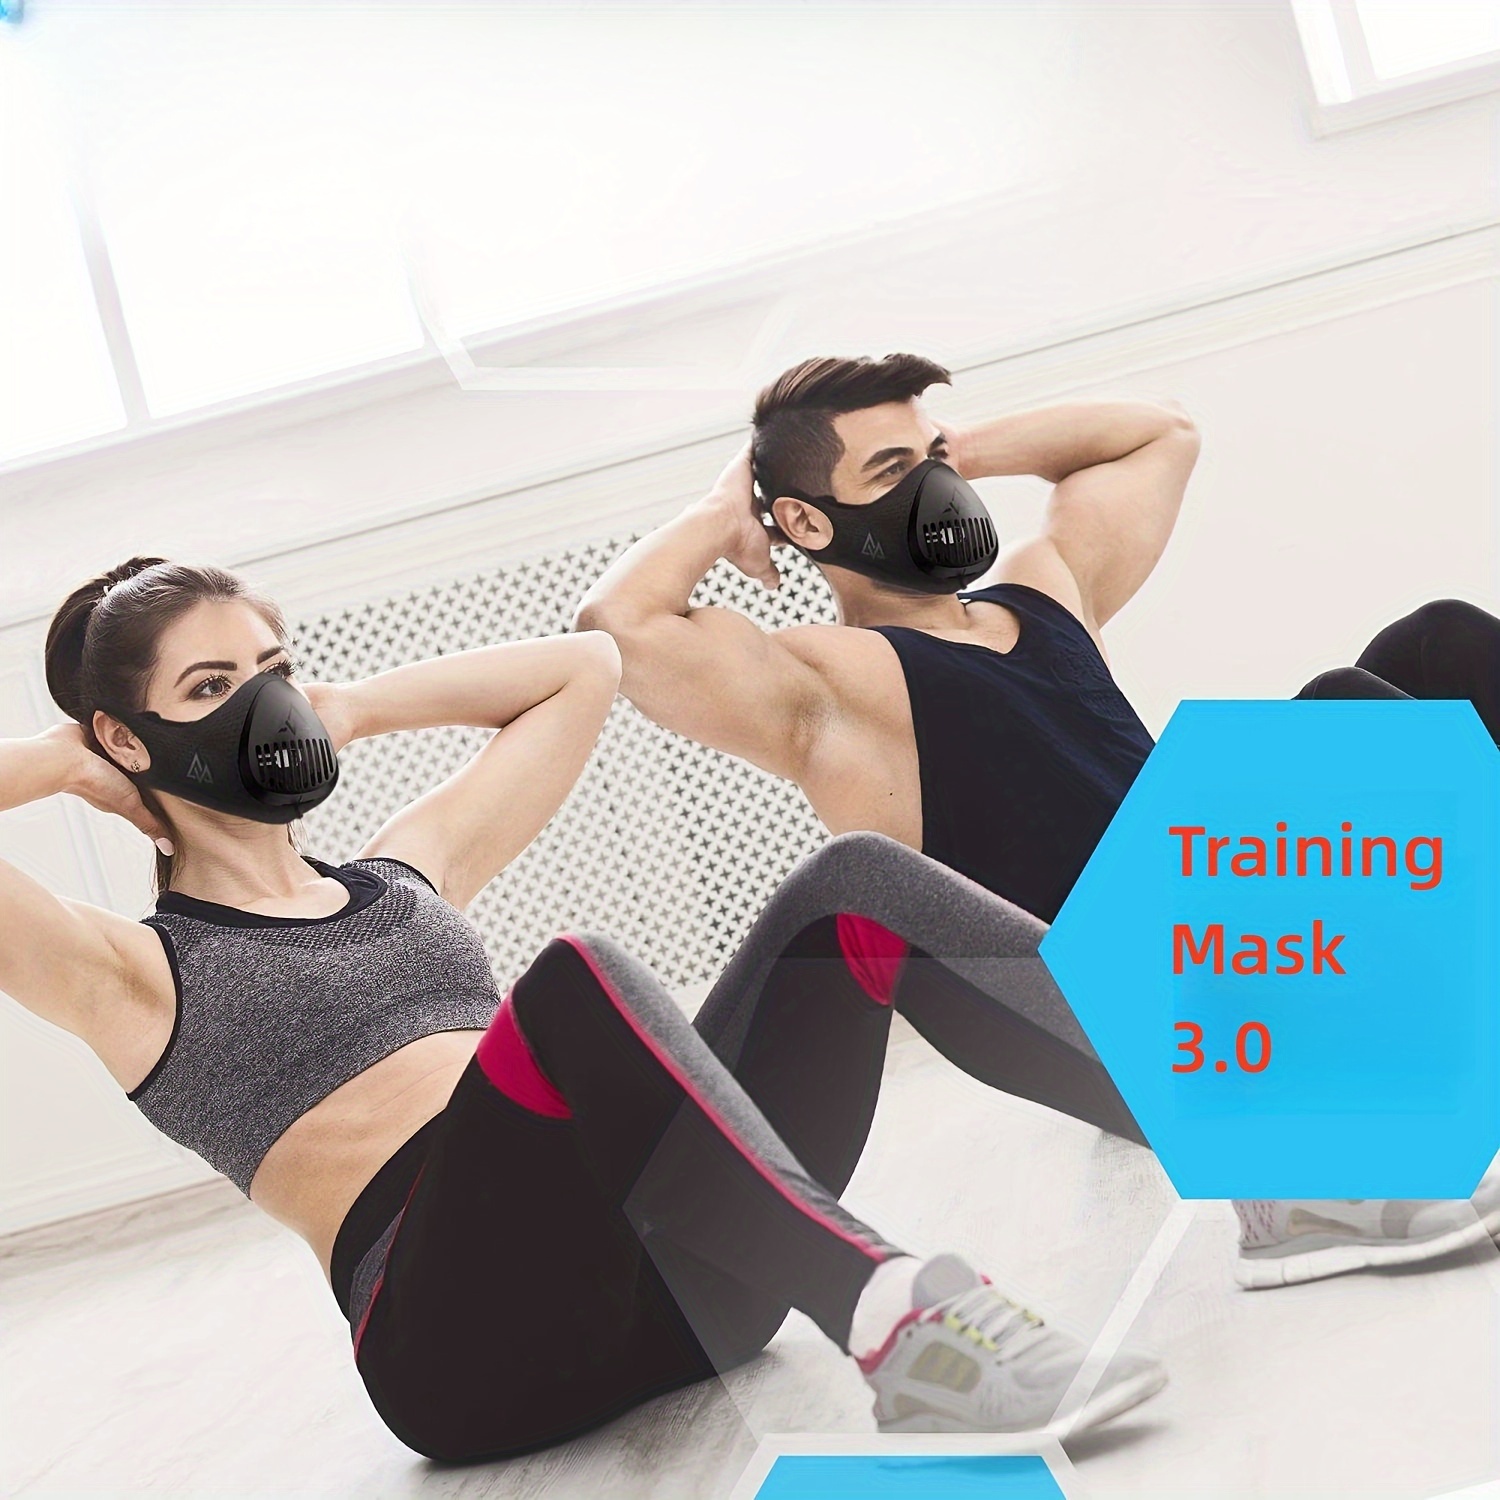 Masque d'entraînement - Masque de sport - Masque respiratoire